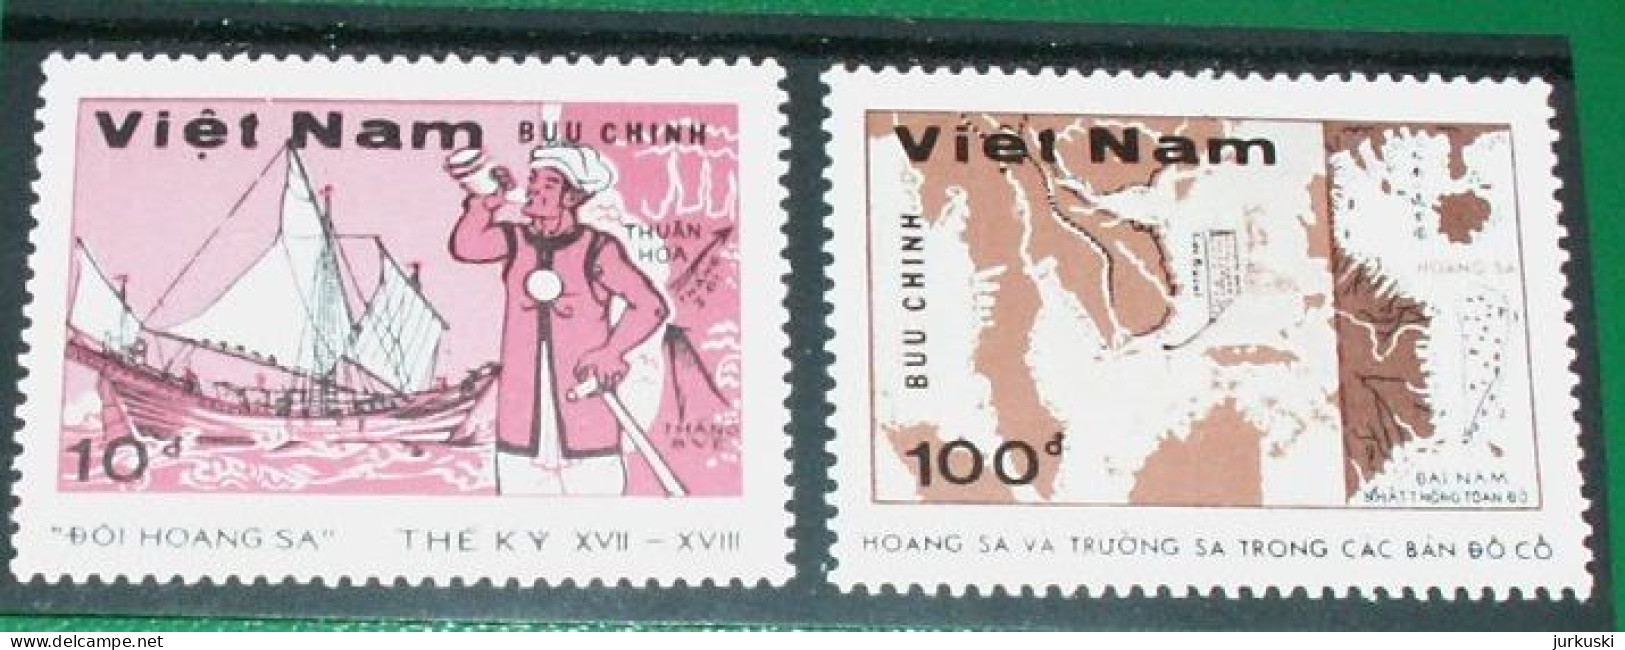 Vietnam 1988 - Mi.1886-87 - Ship / Map - Hoang Sa / Truong Sa - MNH - Vietnam